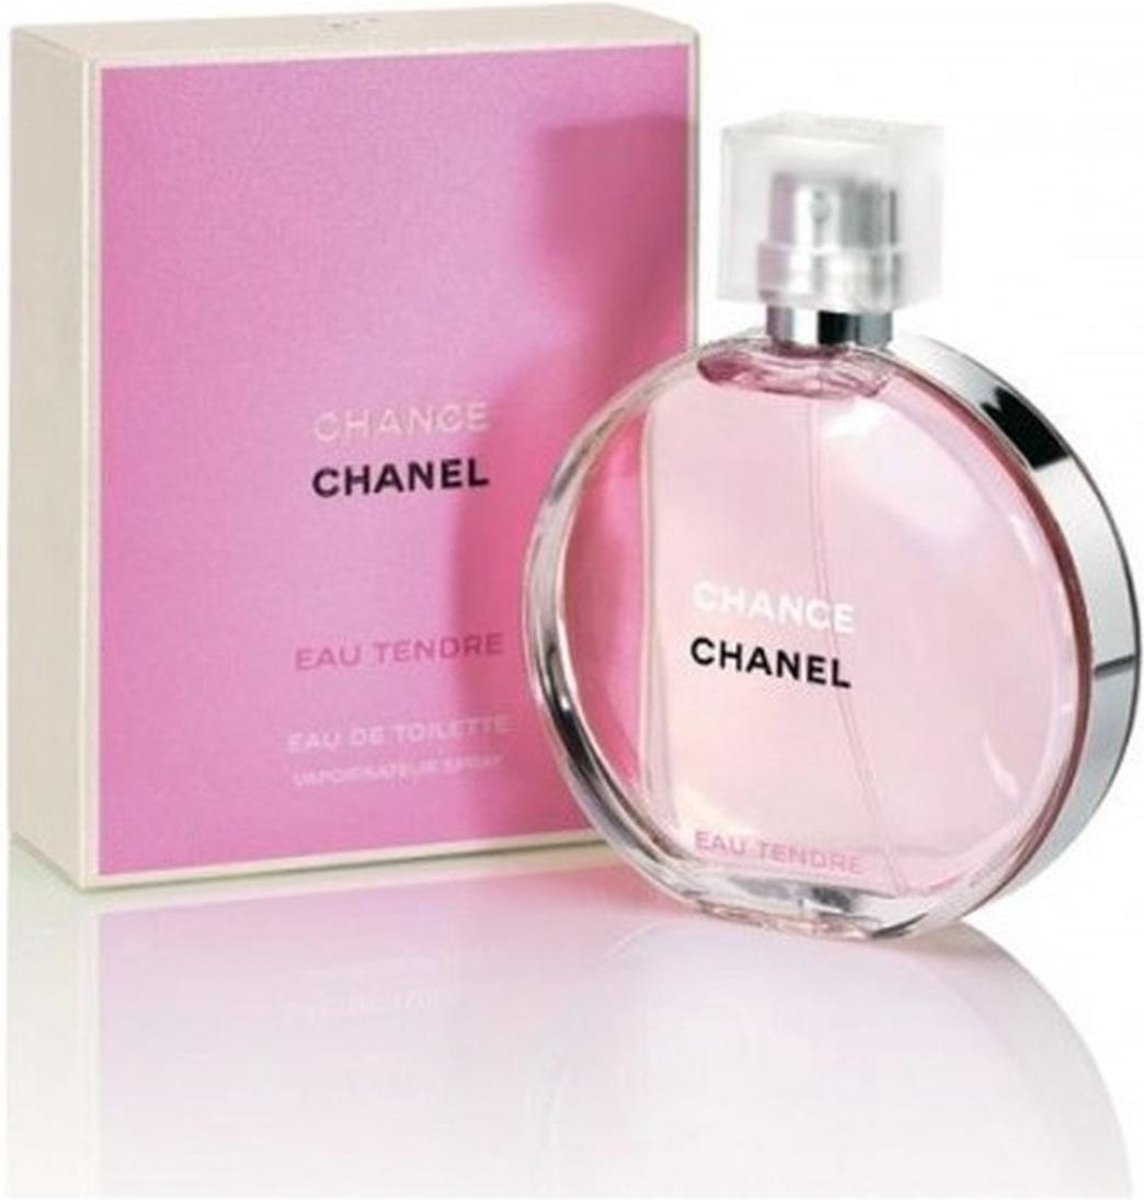 Chanel Eau Tendre 150 ml - Eau de Toilette - Damesparfum | bol.com